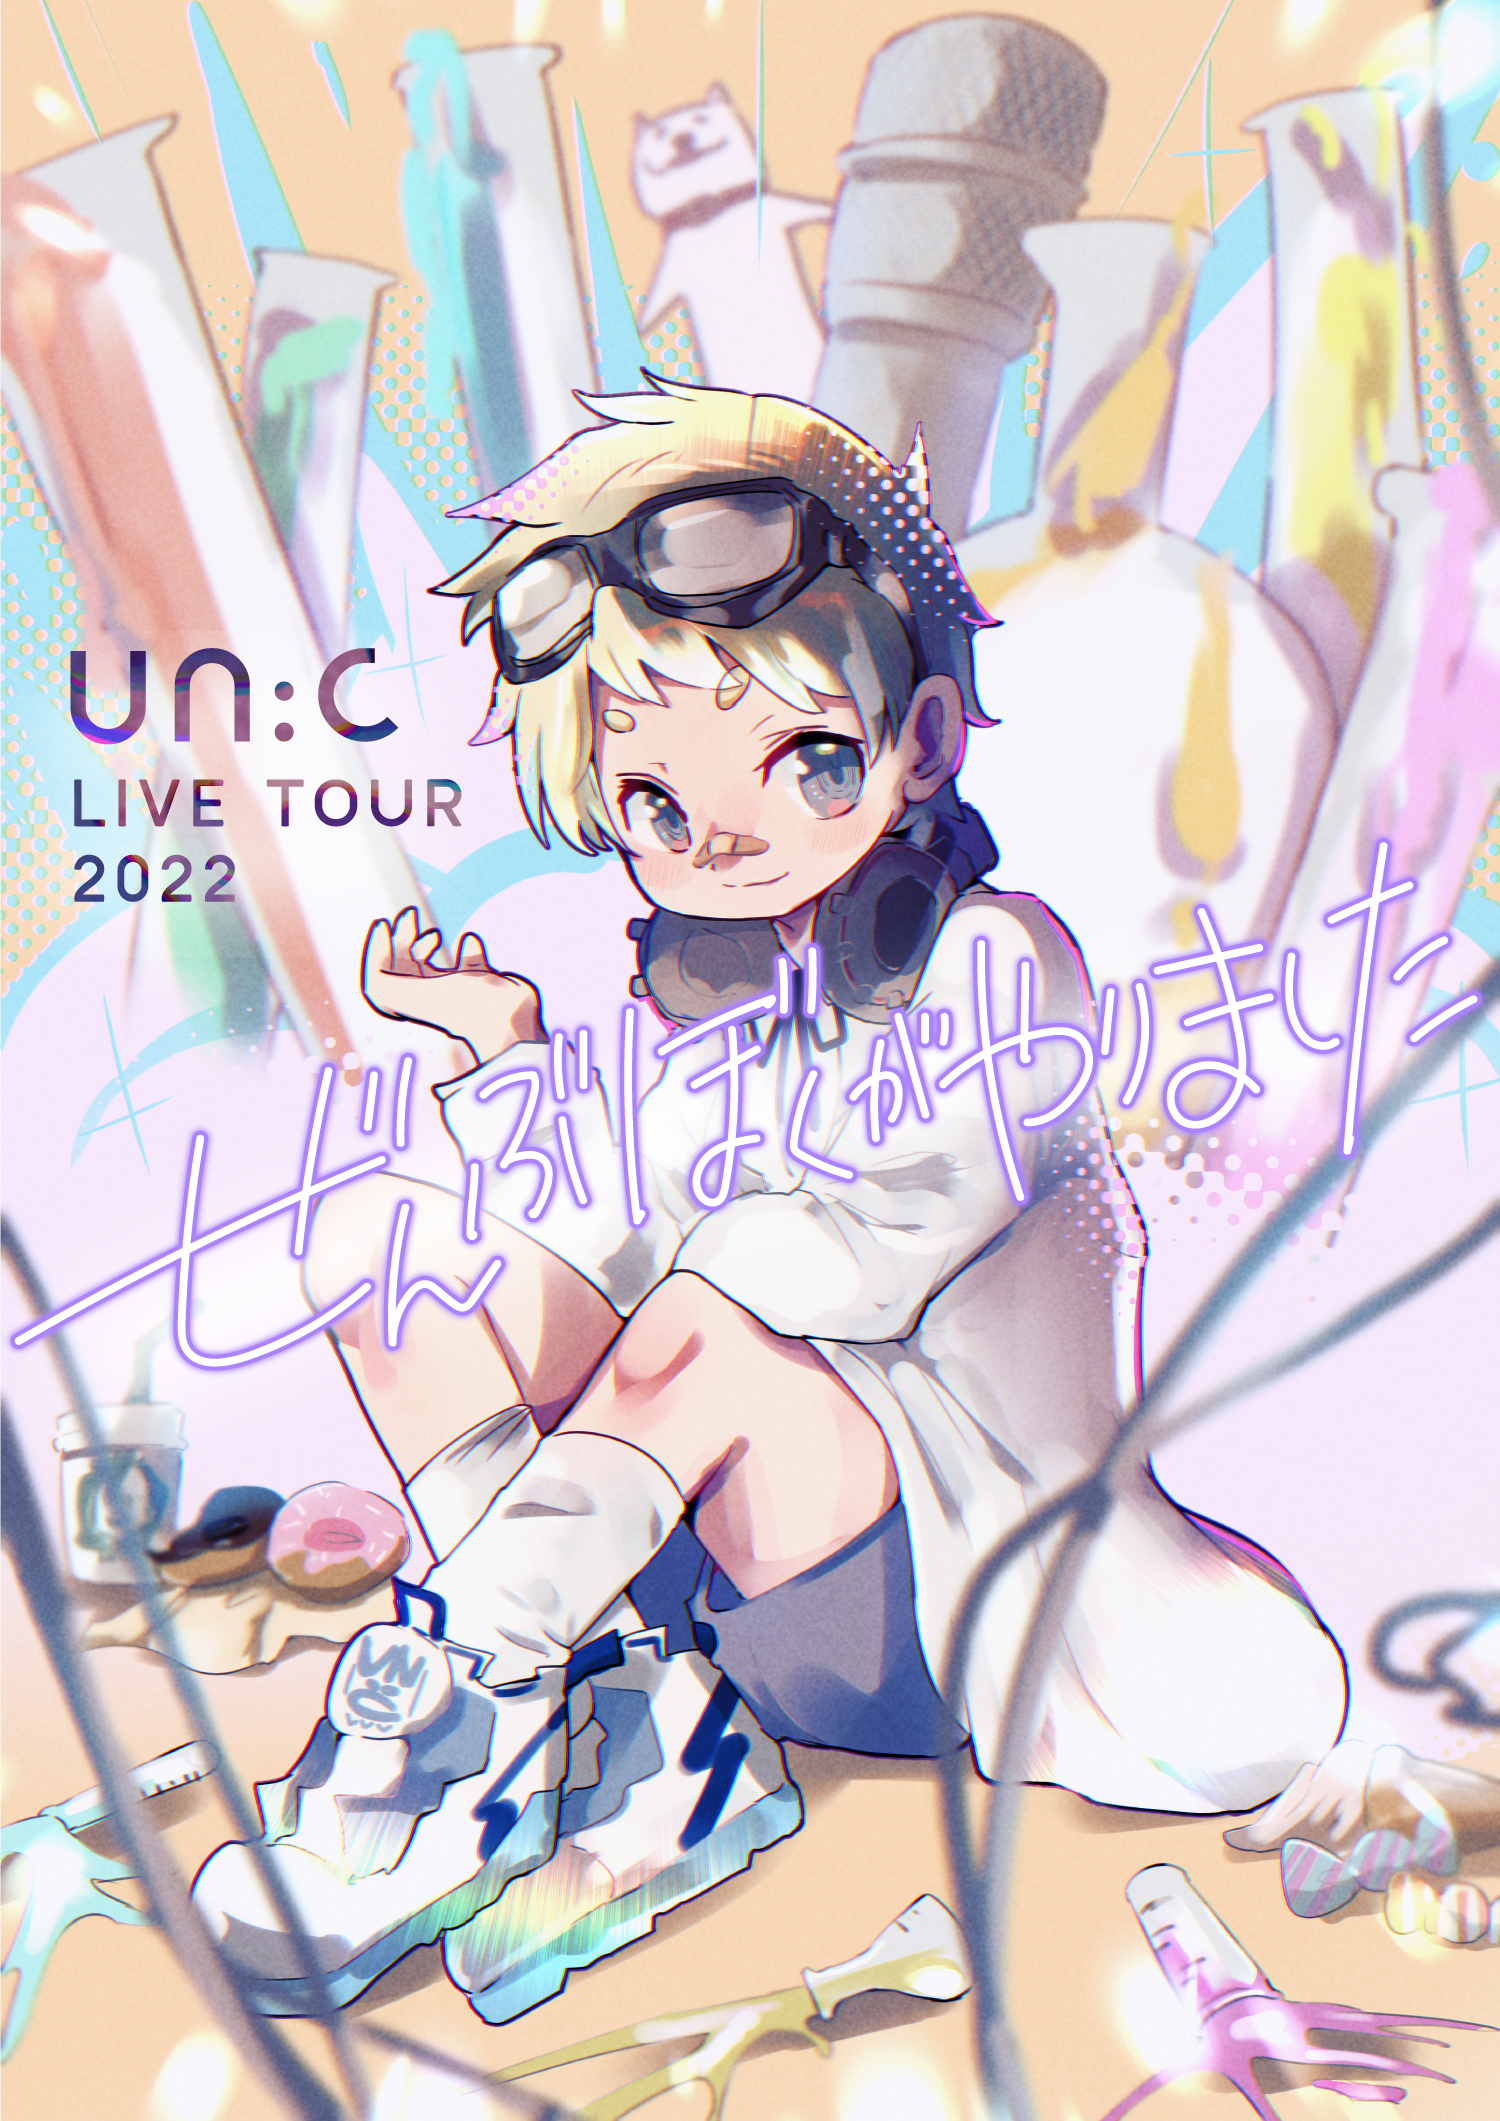 「un:c LIVE TOUR 2022 -ぜんぶぼくがやりました-」フライヤー 　Illustration by un:c